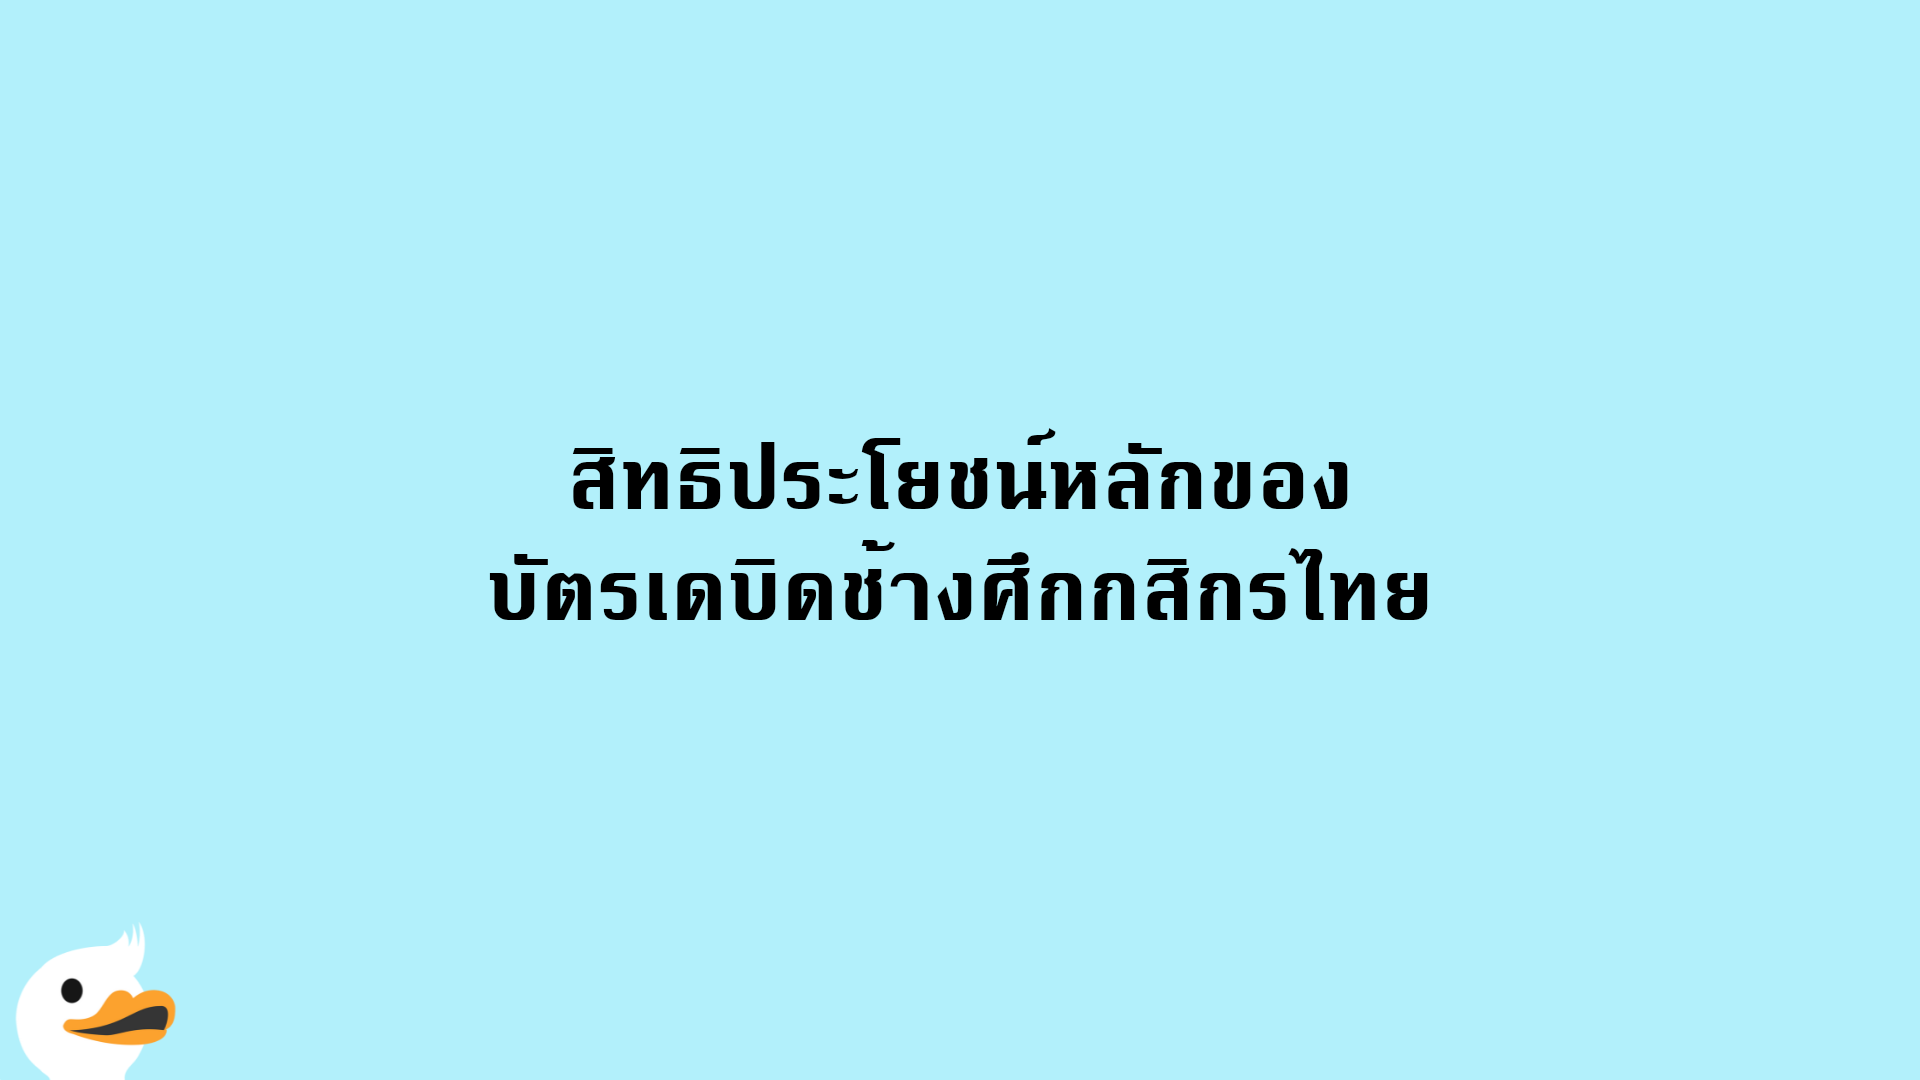 สิทธิประโยชน์หลักของ บัตรเดบิดช้างศึกกสิกรไทย